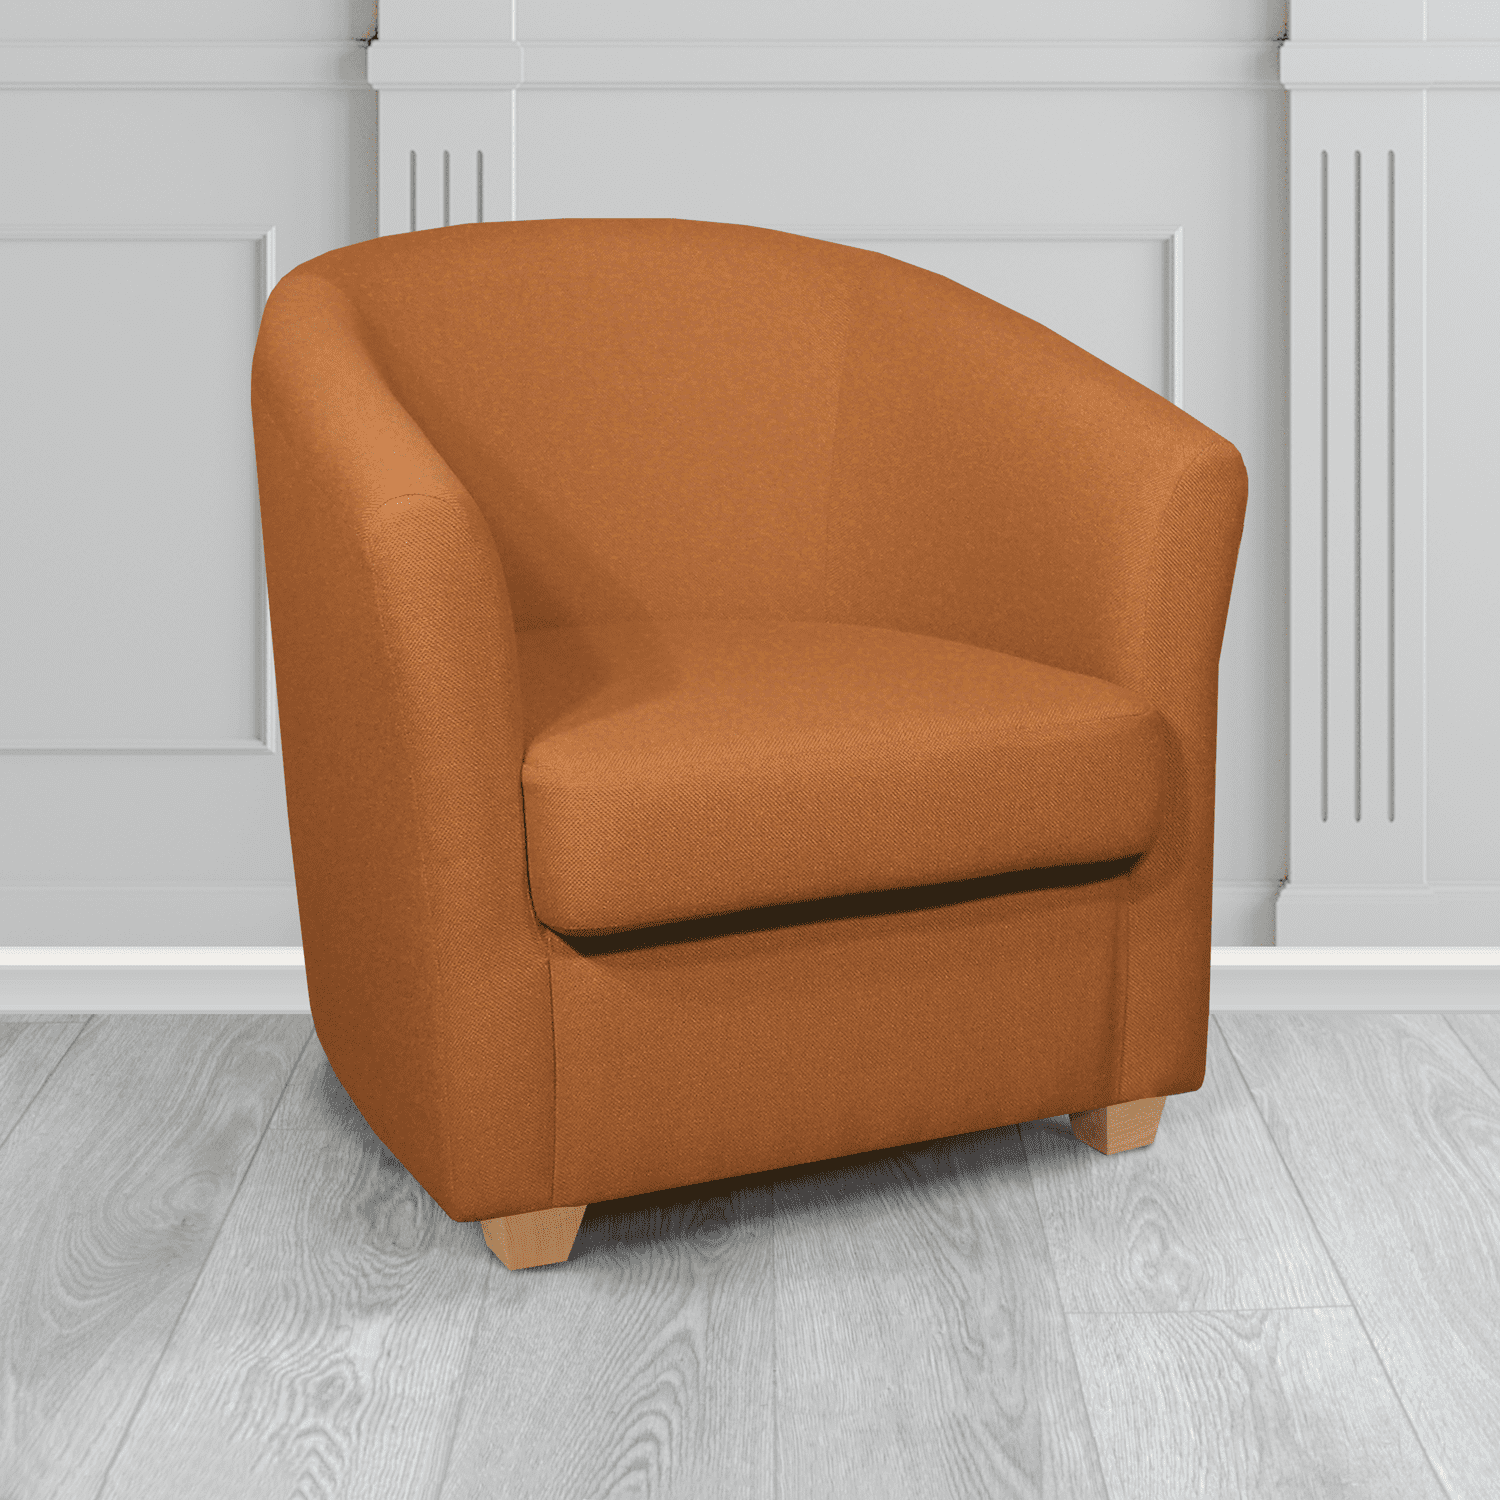 Cannes Tub Chair in Mainline Plus Marmalade IF142 Crib 5 Fabric - The Tub Chair Shop